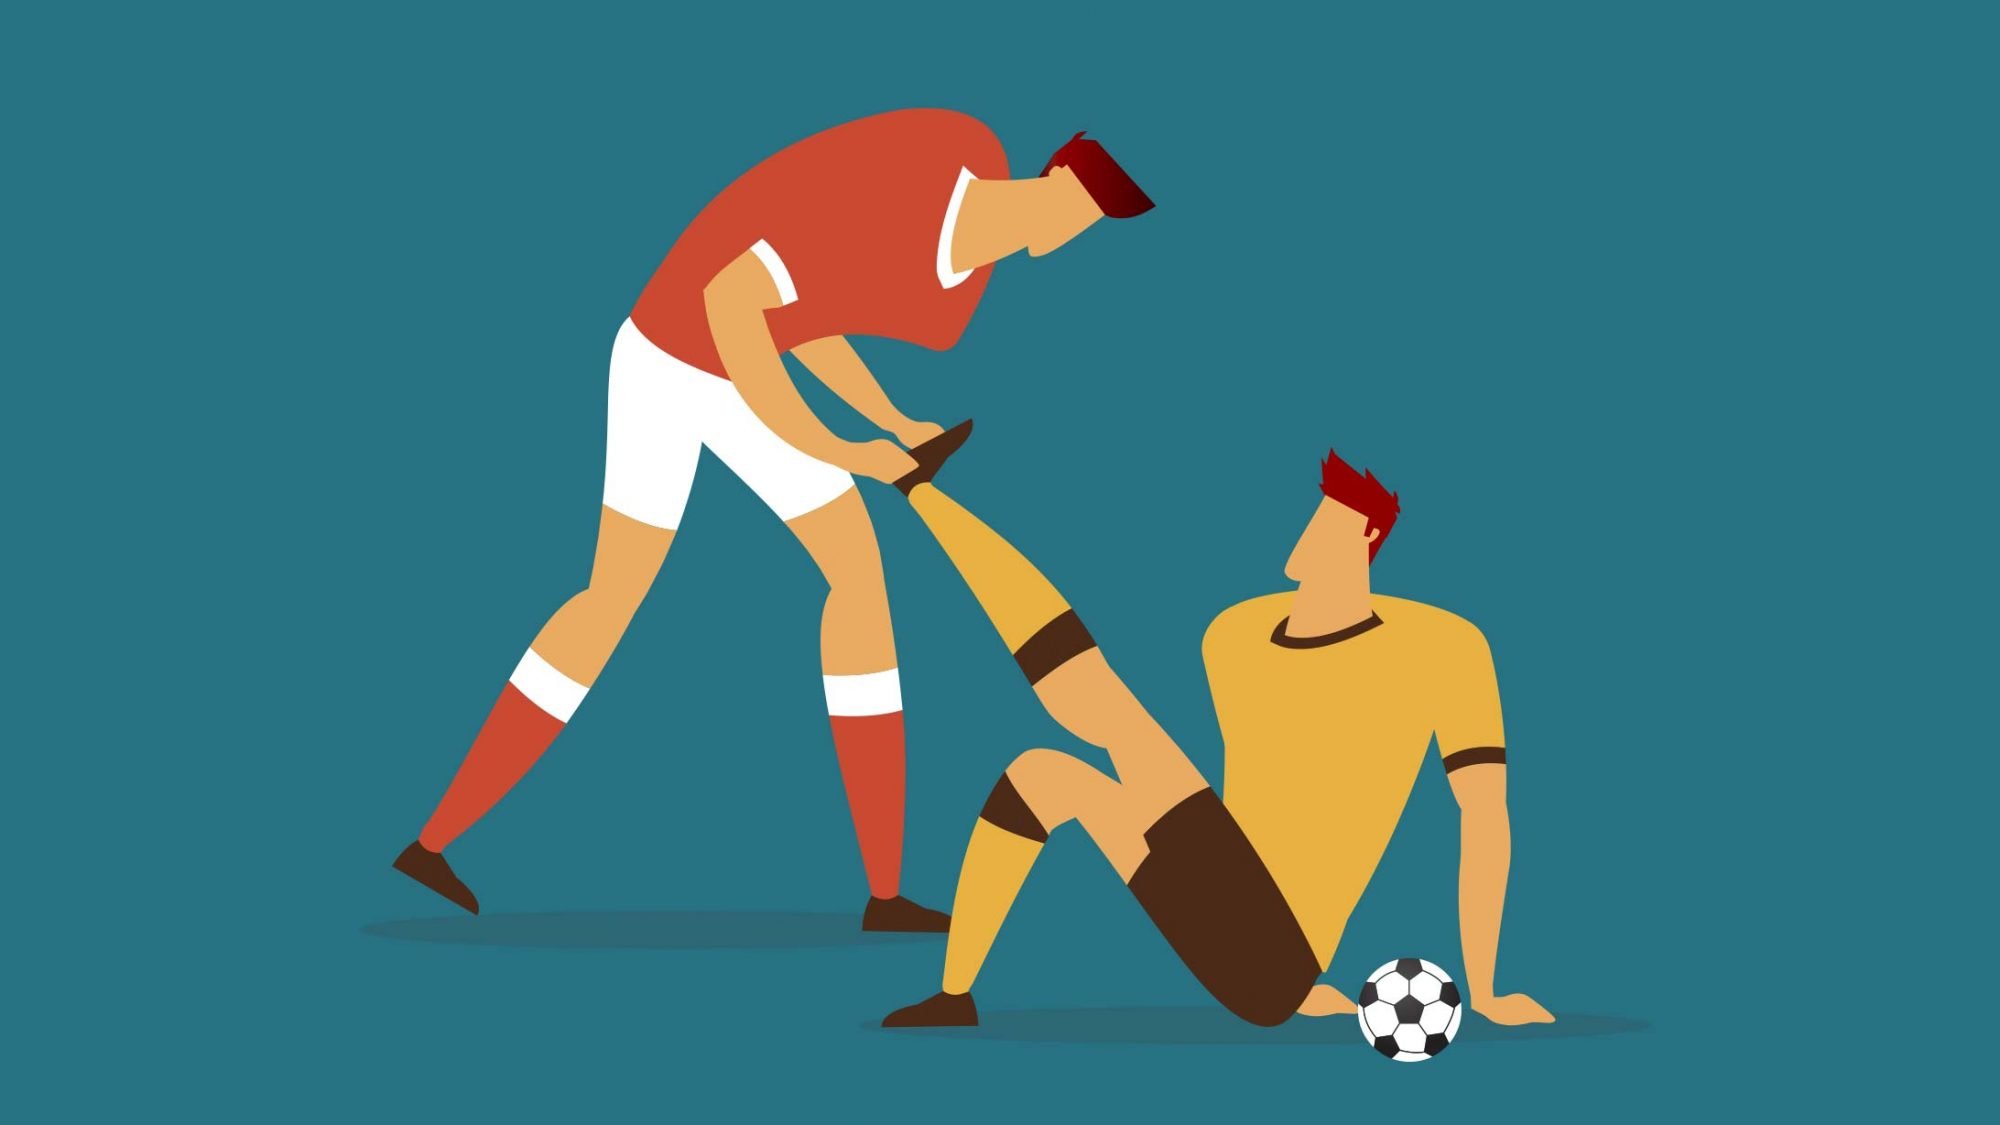 Muskelkrampf: Illustration von Muskelkrampf beim Fussballtraining